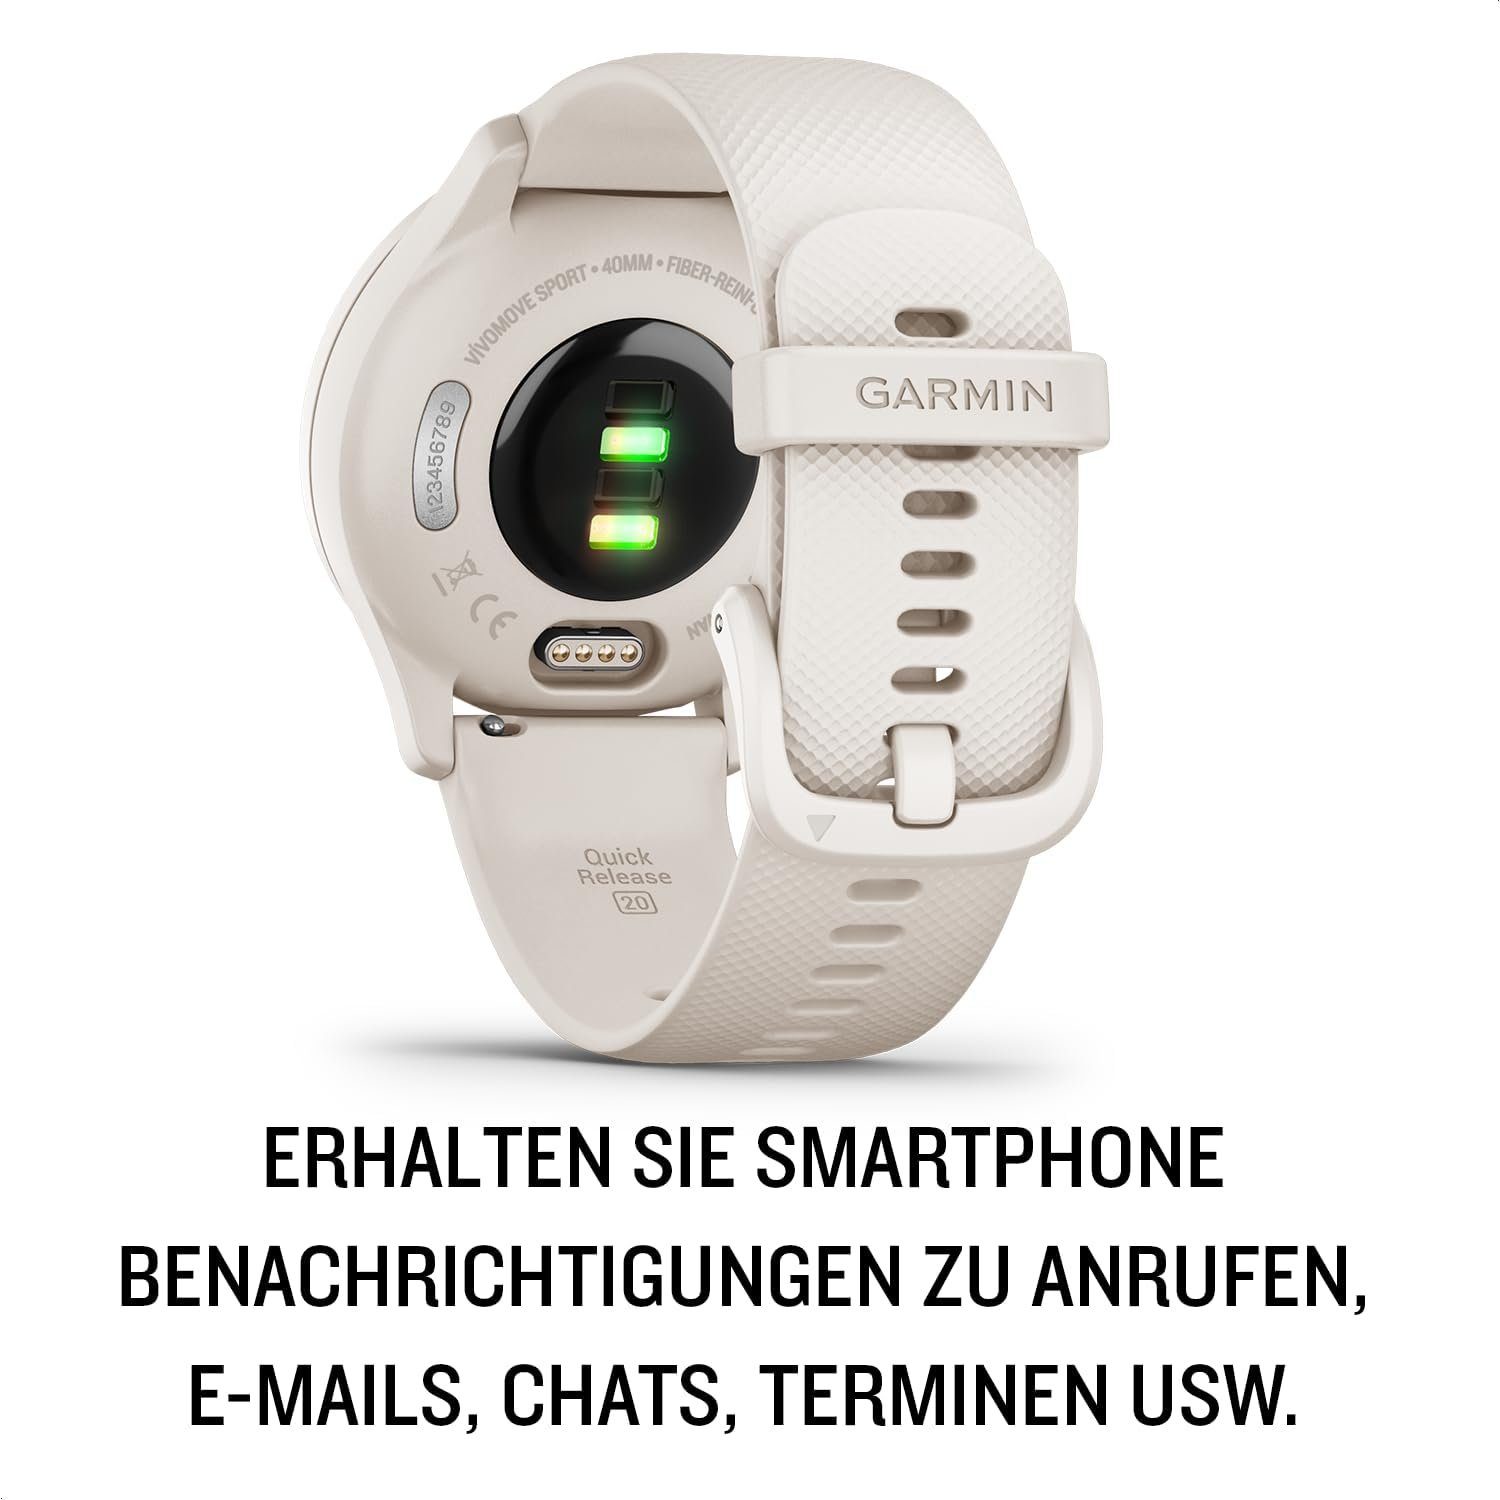 Sport- und Touchdisplay. Smartphone iOS), Gesundheitsfunktionen Garmin Zeigern Smartwatch und (Android